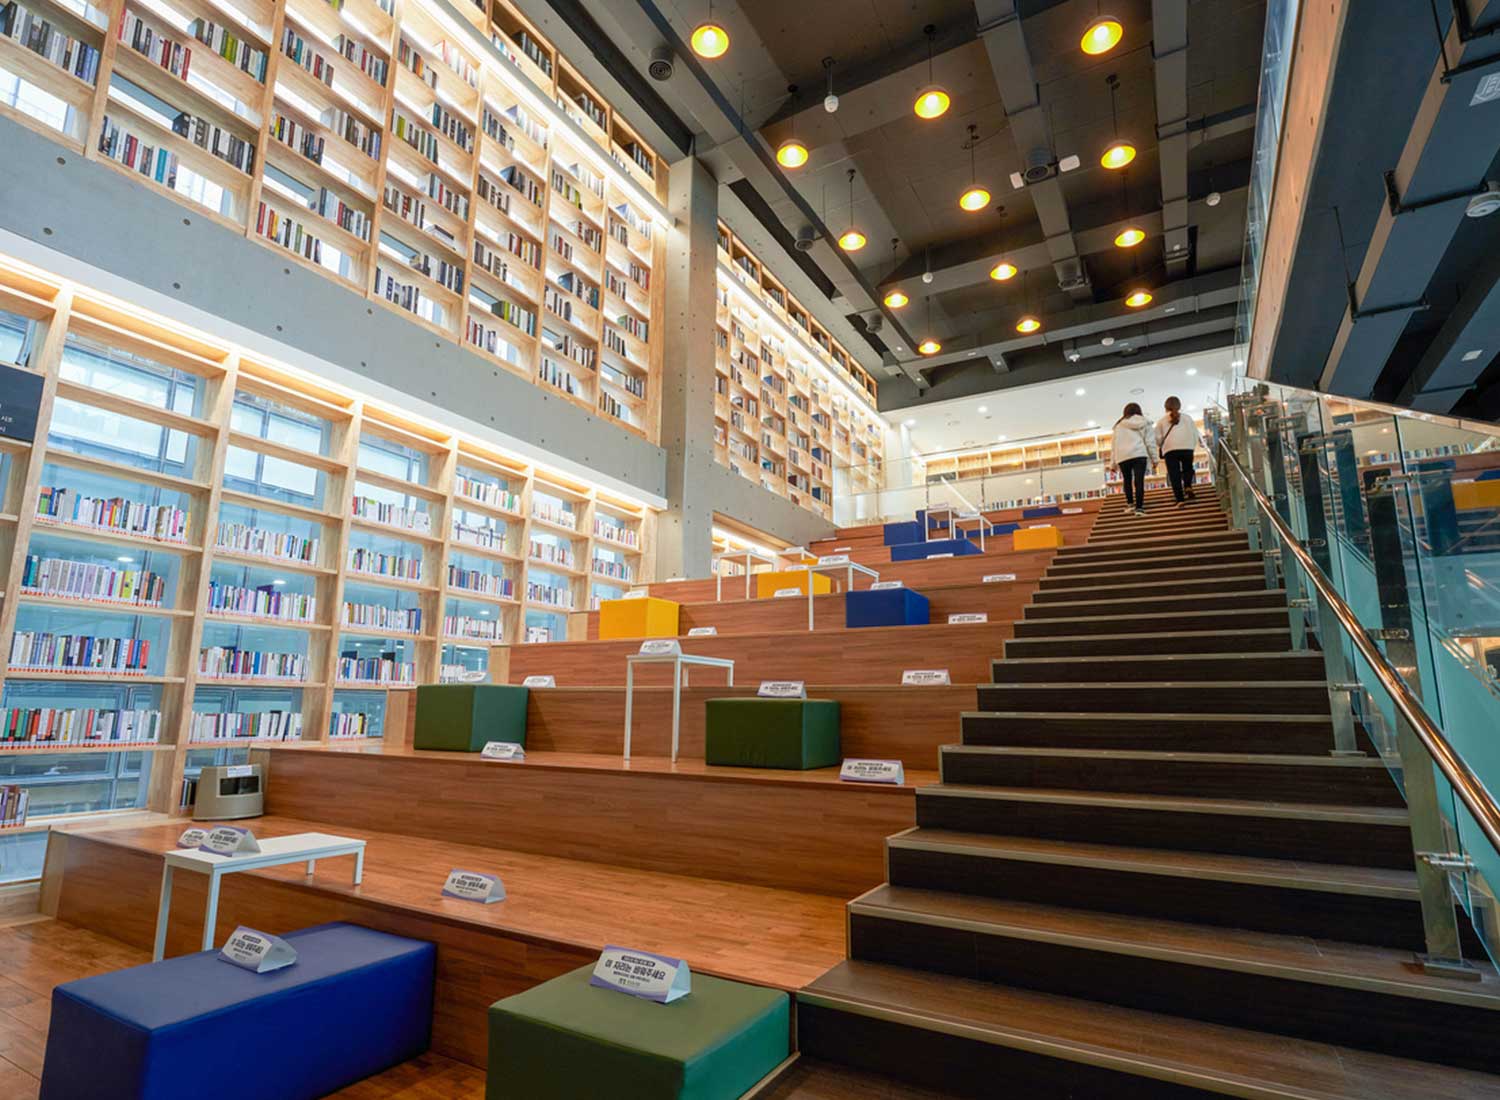 釜山圖書館階梯式座席區域